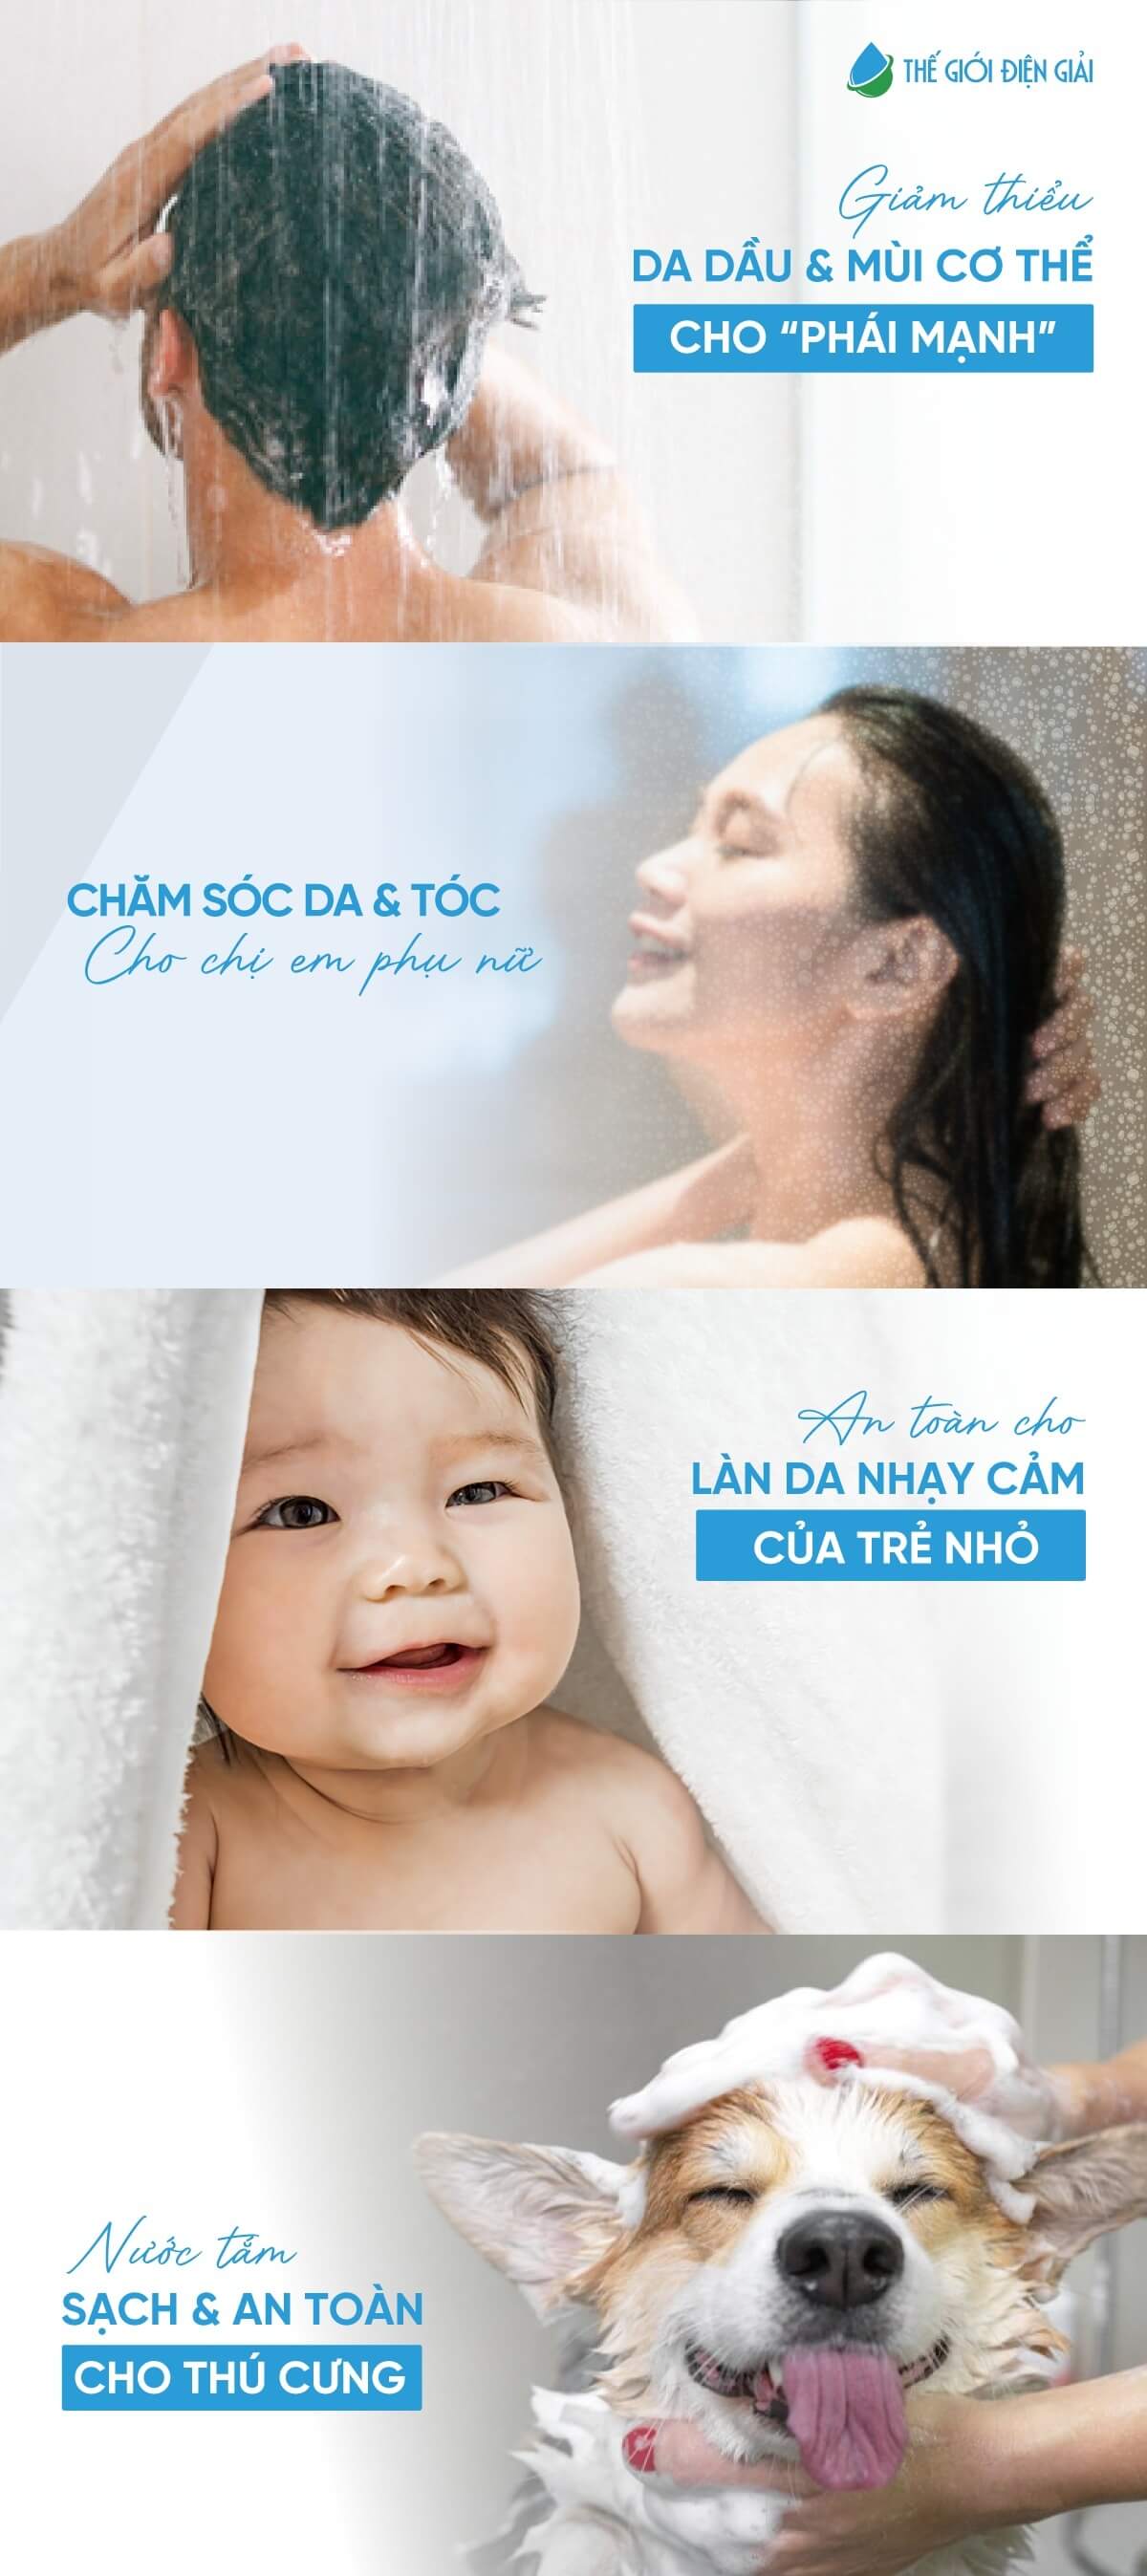 Máy tắm iON khoáng Fuji Smart Onsen JP Pro có nên sử dụng cho em bé không?